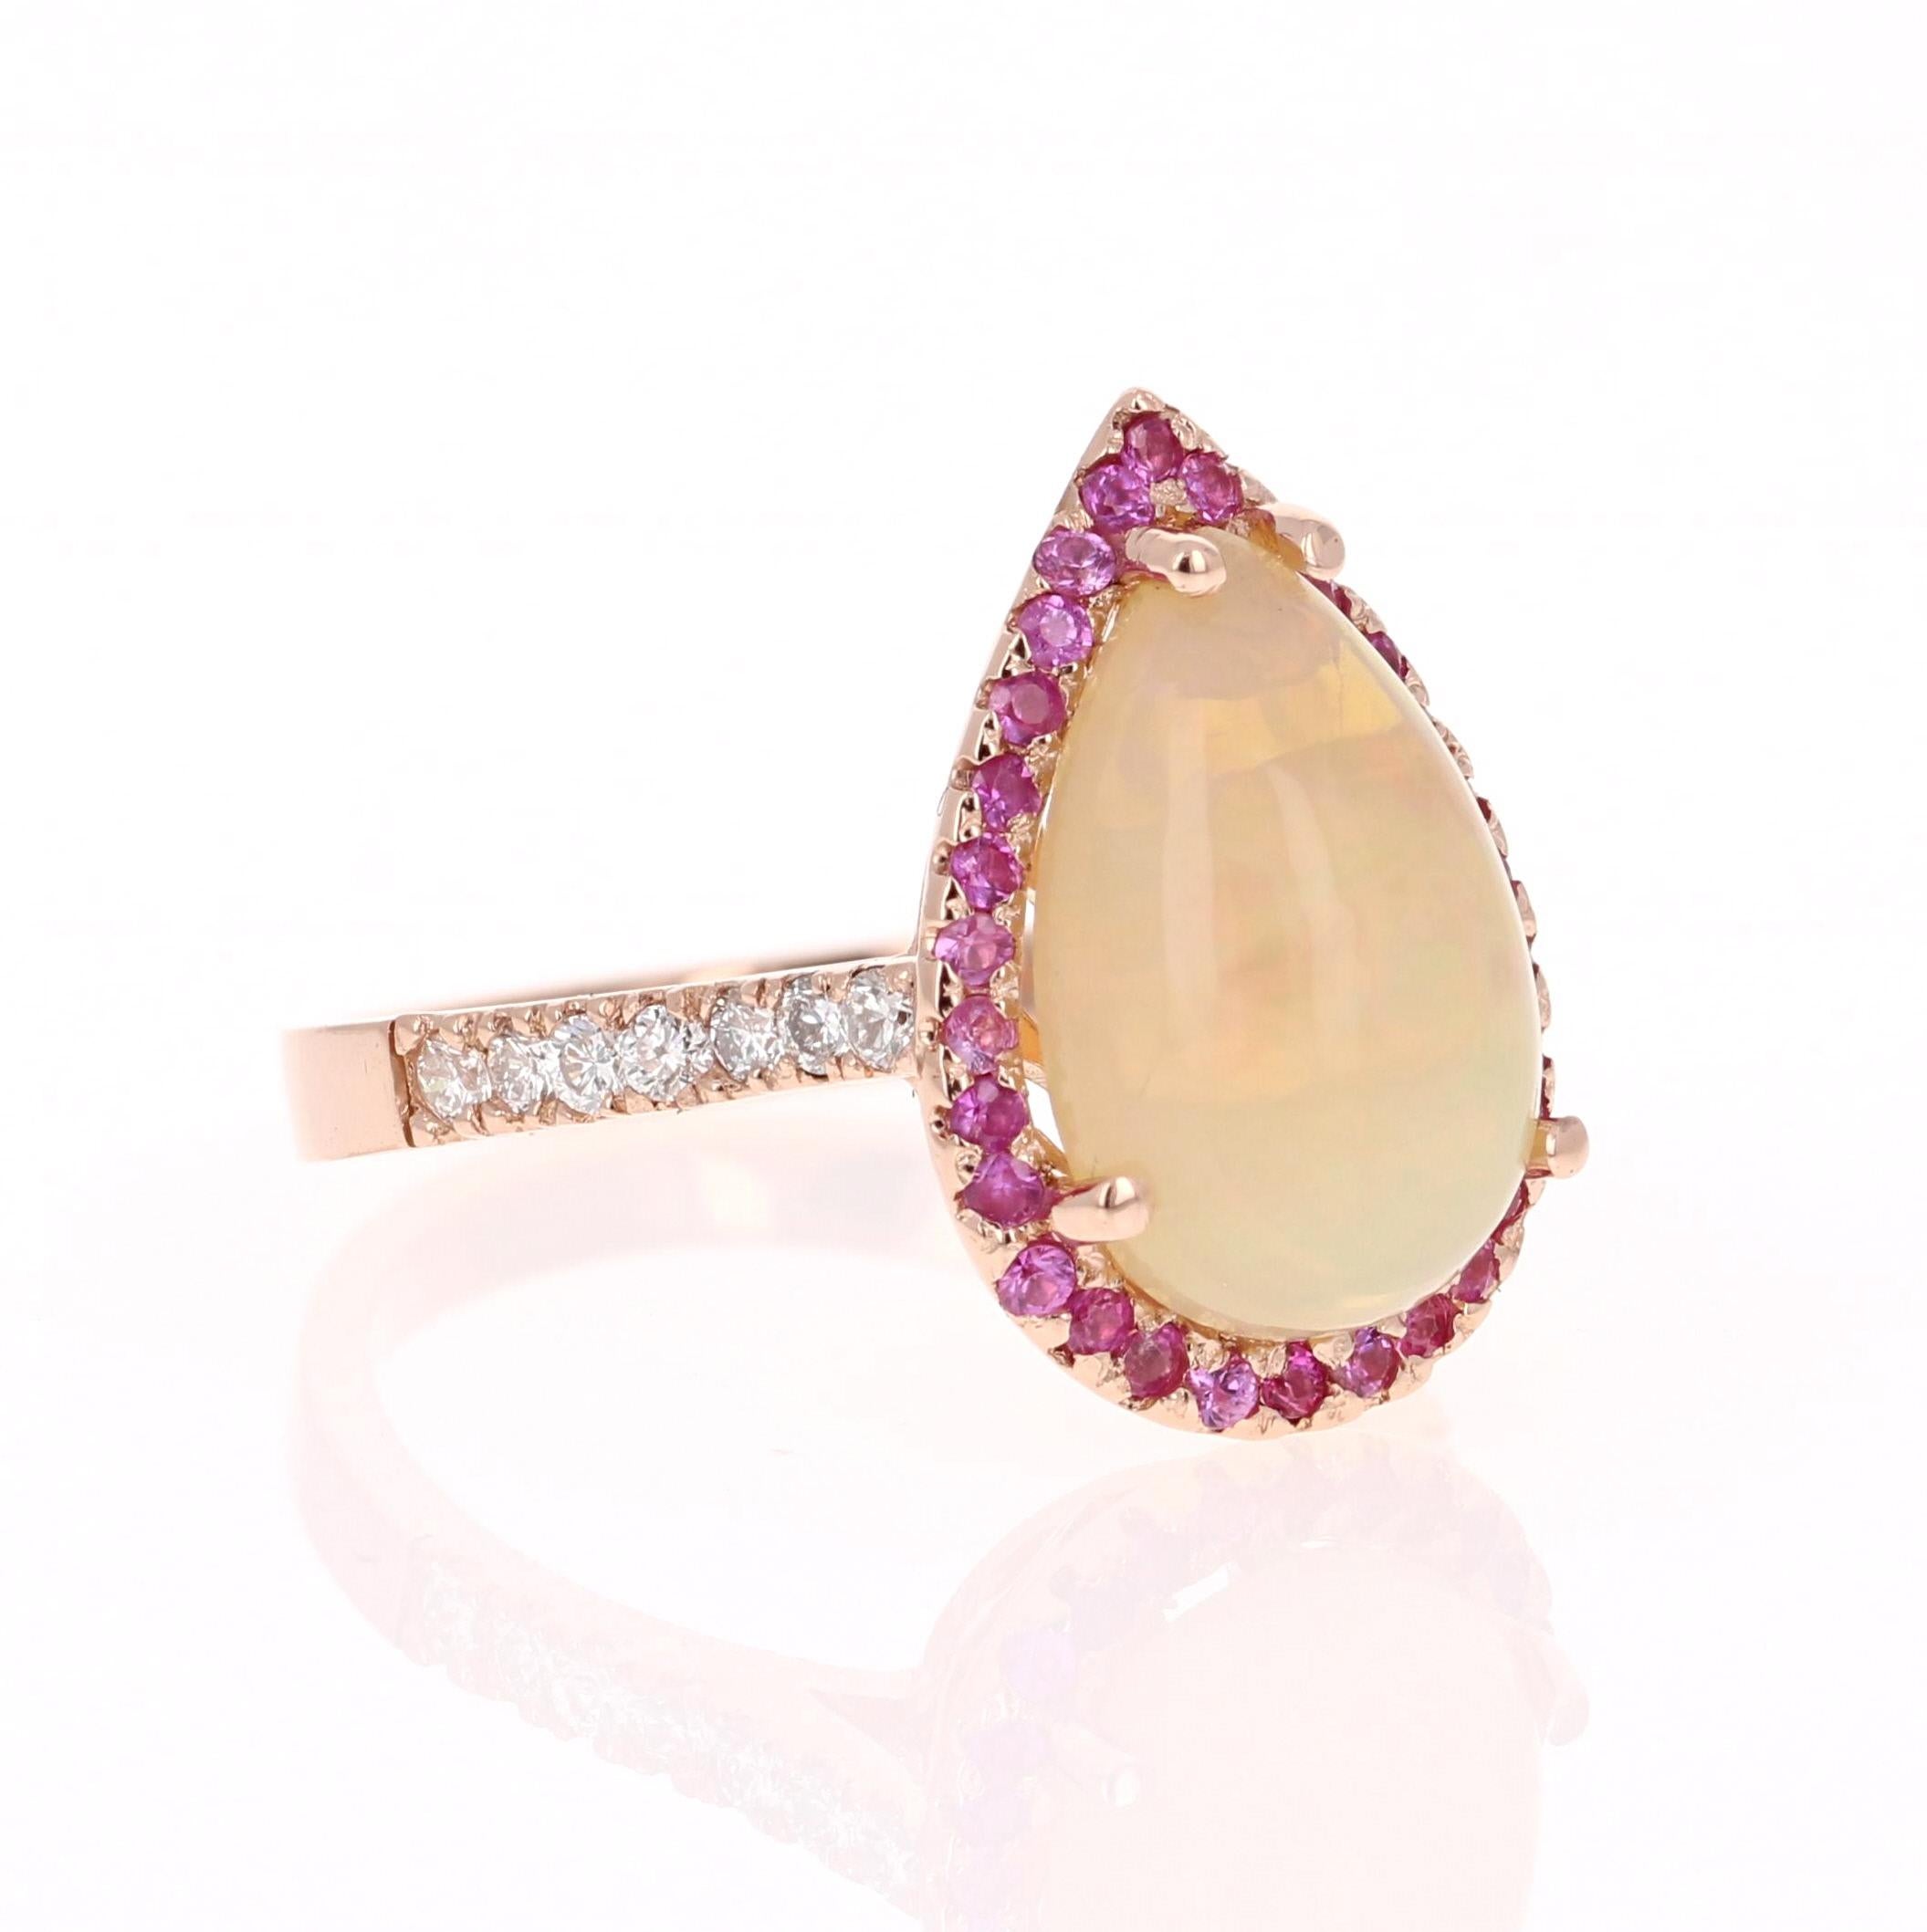 Einzigartiger und wunderschön gestalteter Ring, der ein Meisterwerk für jede Schmucksammlung sein kann!   

Dieser Ring hat eine herrlich große 3,04 Karat Natural Pear Cut Opal und ist von 32 natürlichen rosa Saphiren, die 0,40 Karat wiegen umgeben